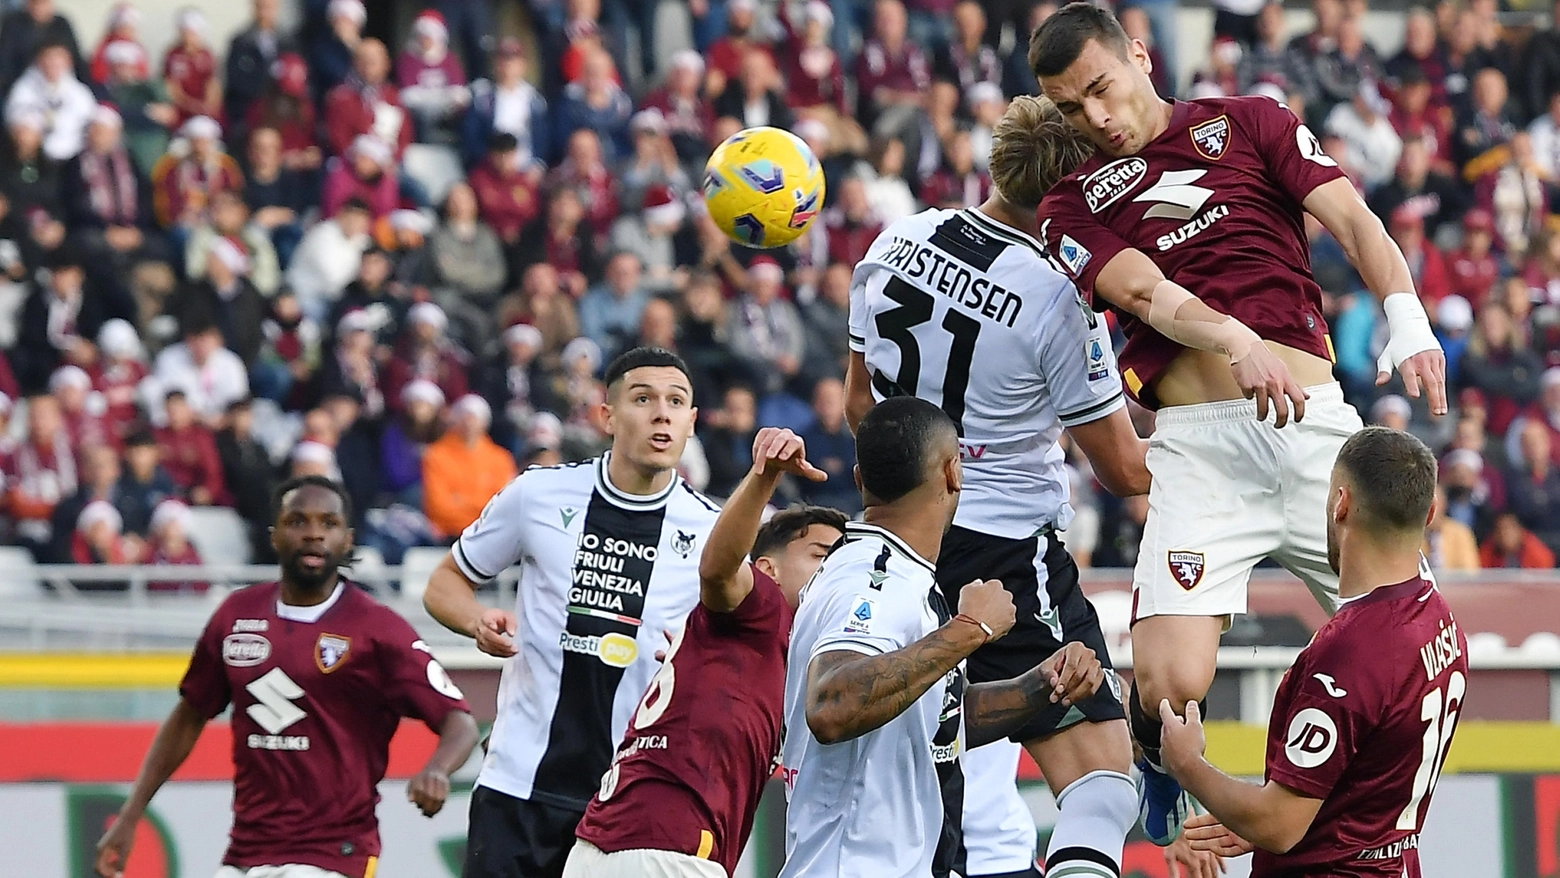 La sfida tra Torino e Udinese è finita in pareggio